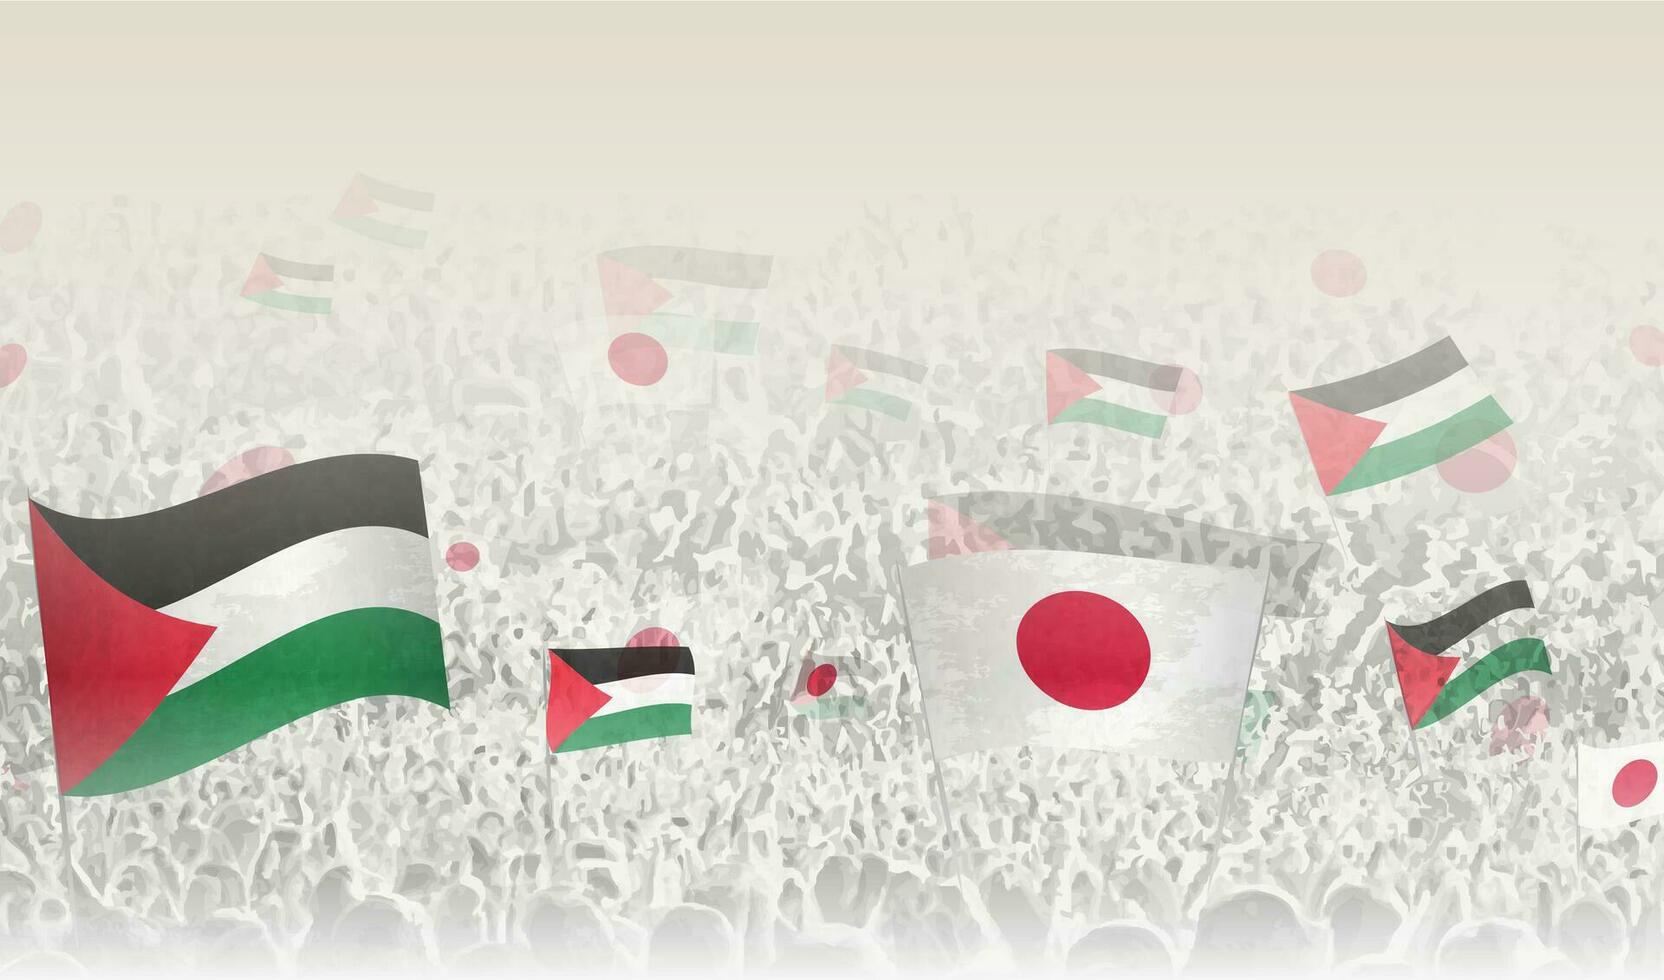 Palestine et Japon drapeaux dans une foule de applaudissement personnes. vecteur